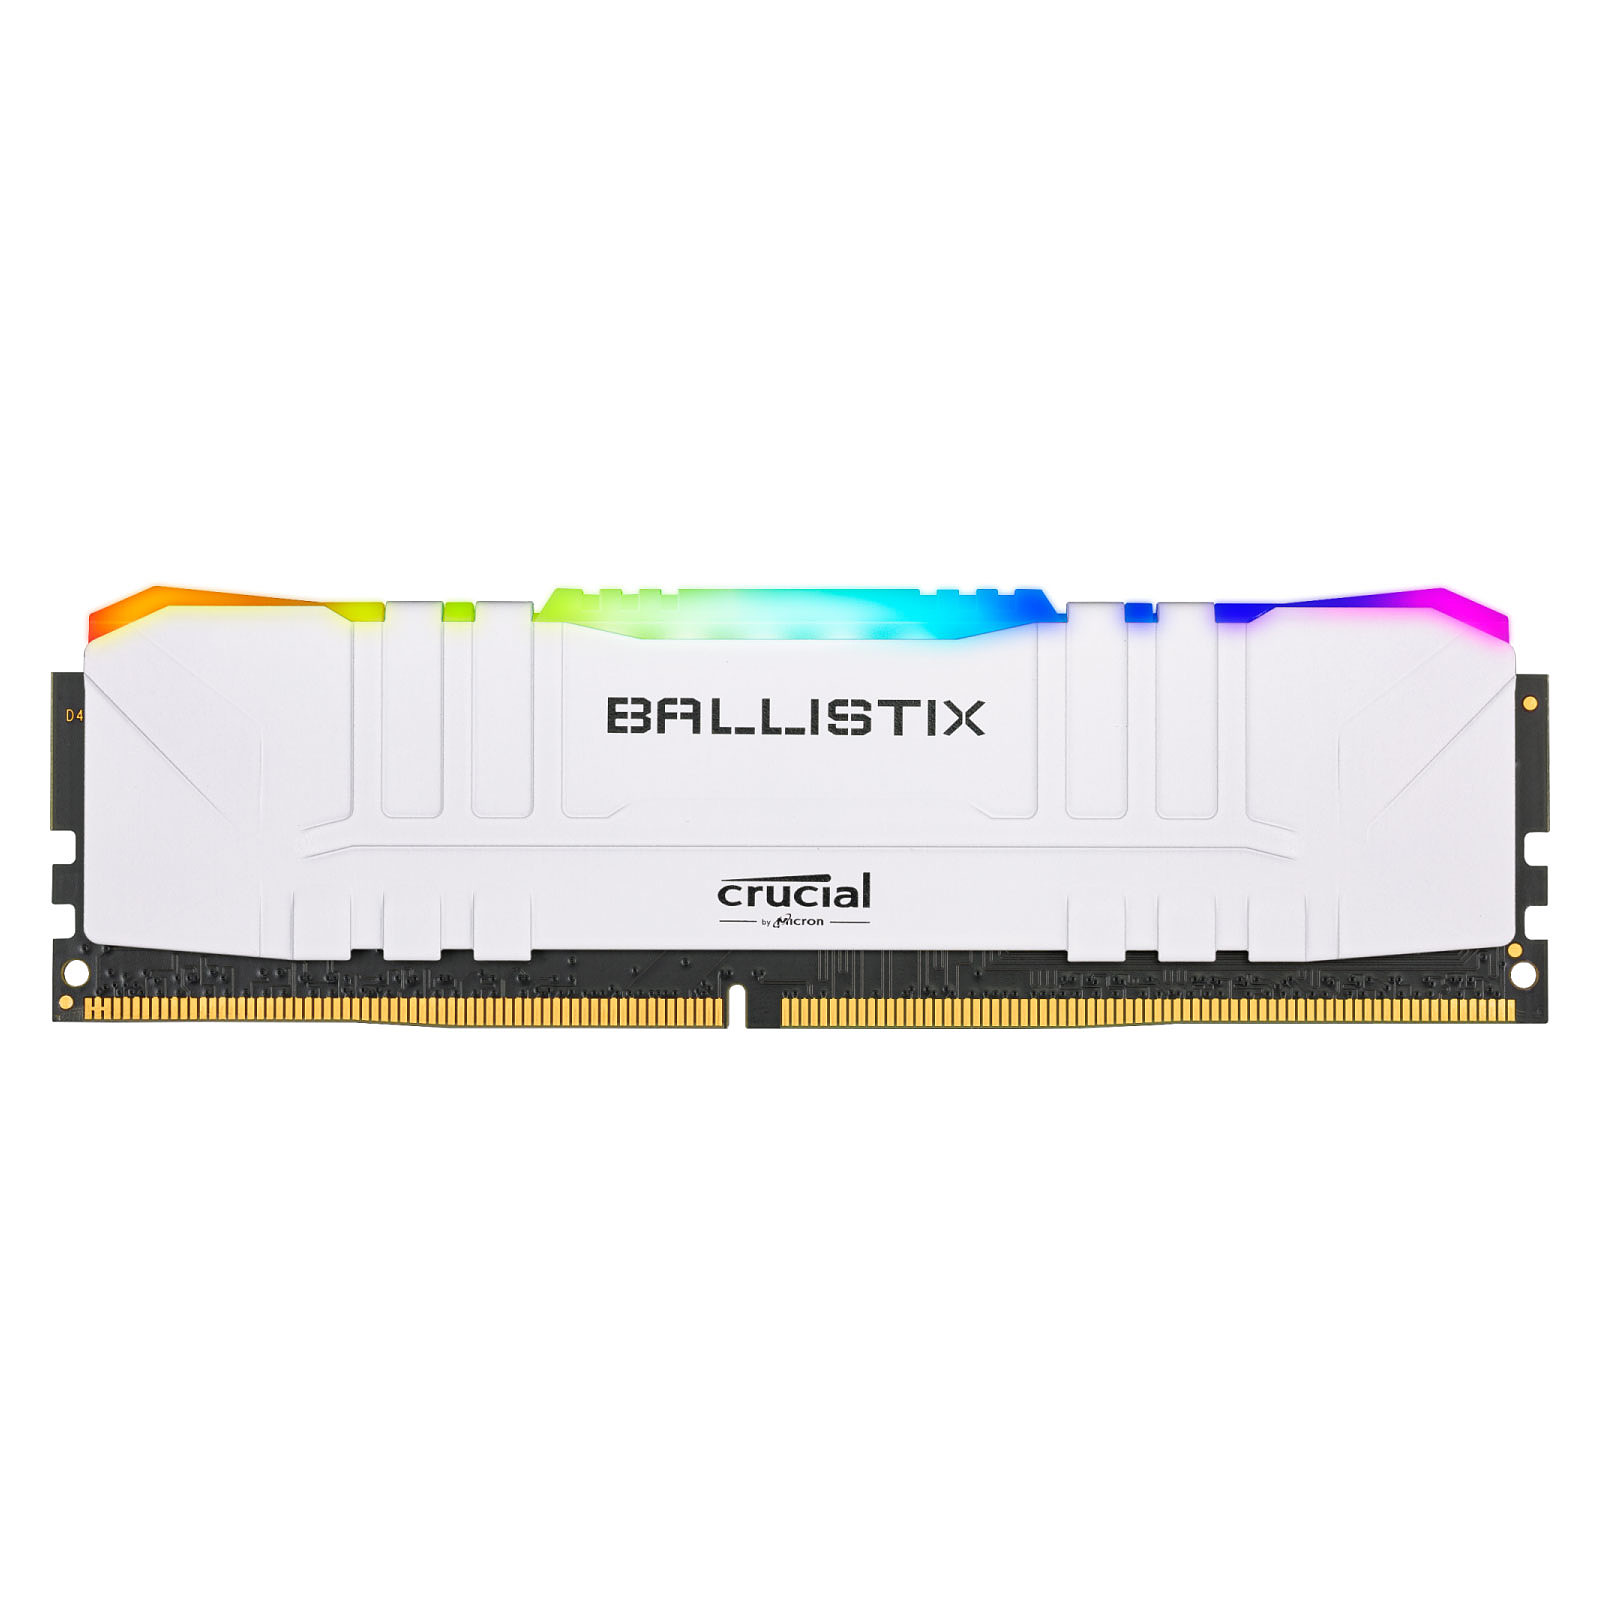 Ballistix RGB 16Go (1x16Go) DDR4 3000MHz - Mémoire PC Ballistix sur grosbill-pro.com - 0